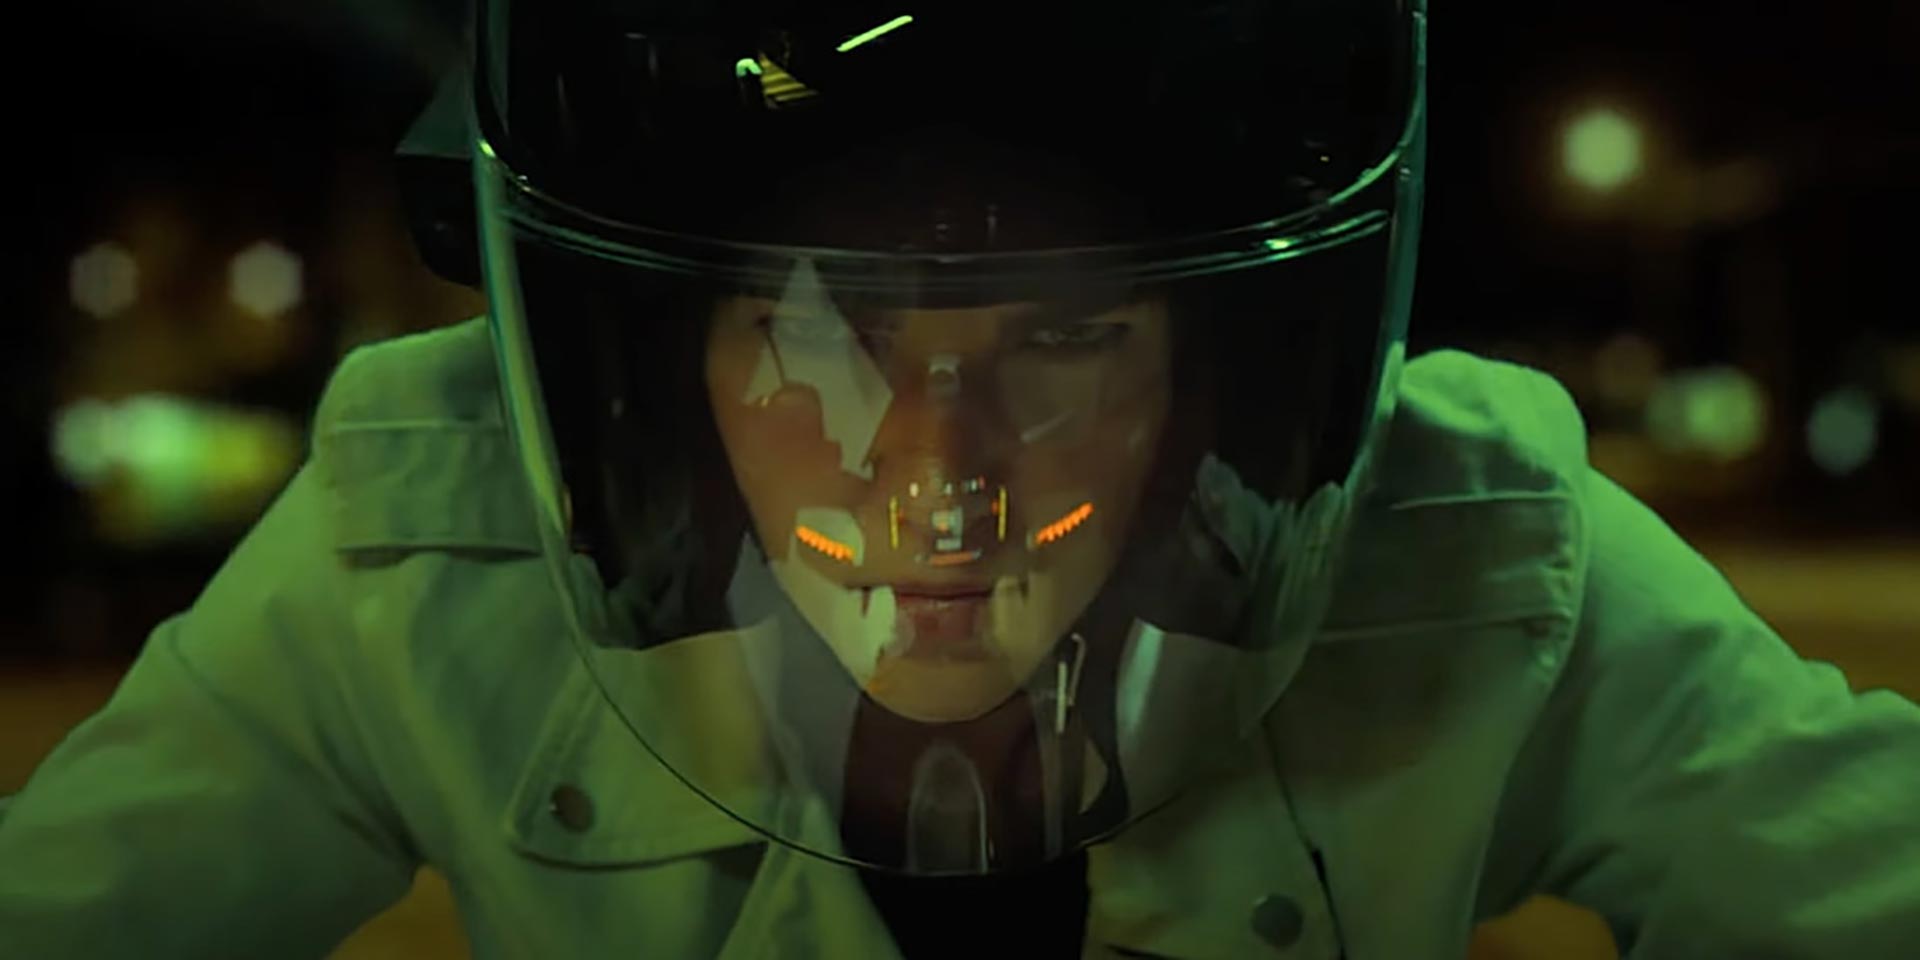 رابی رز در نقس ویکتوریا سوار بر موتور بعد از پذیرش ماموریت در فیلم غلبه